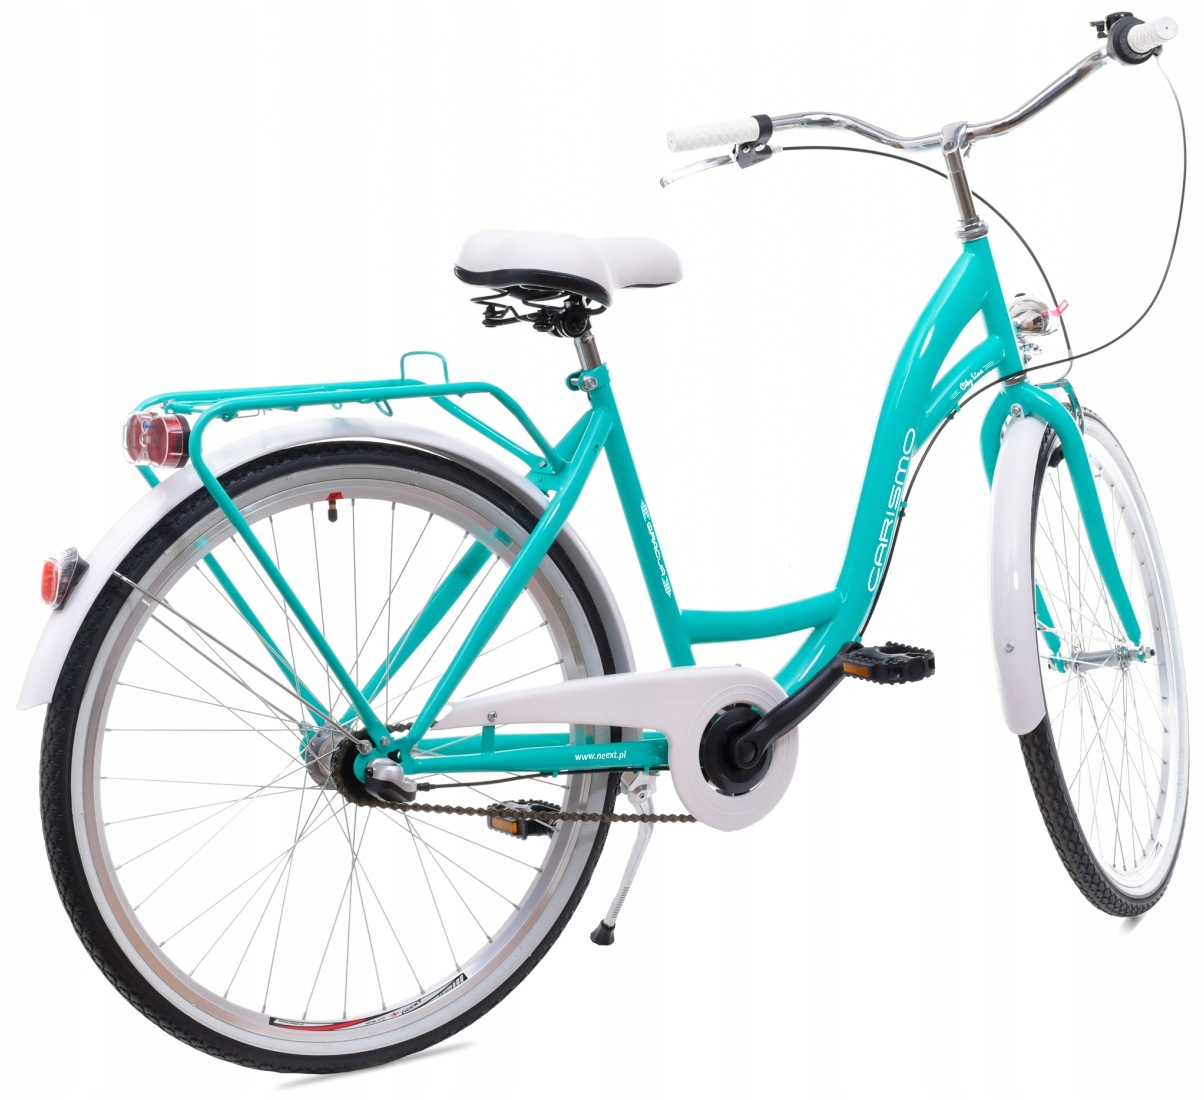 Dámsky mestský bicykel GRACE 26 Shimano 3b, holandské rozmery kolies (") 26